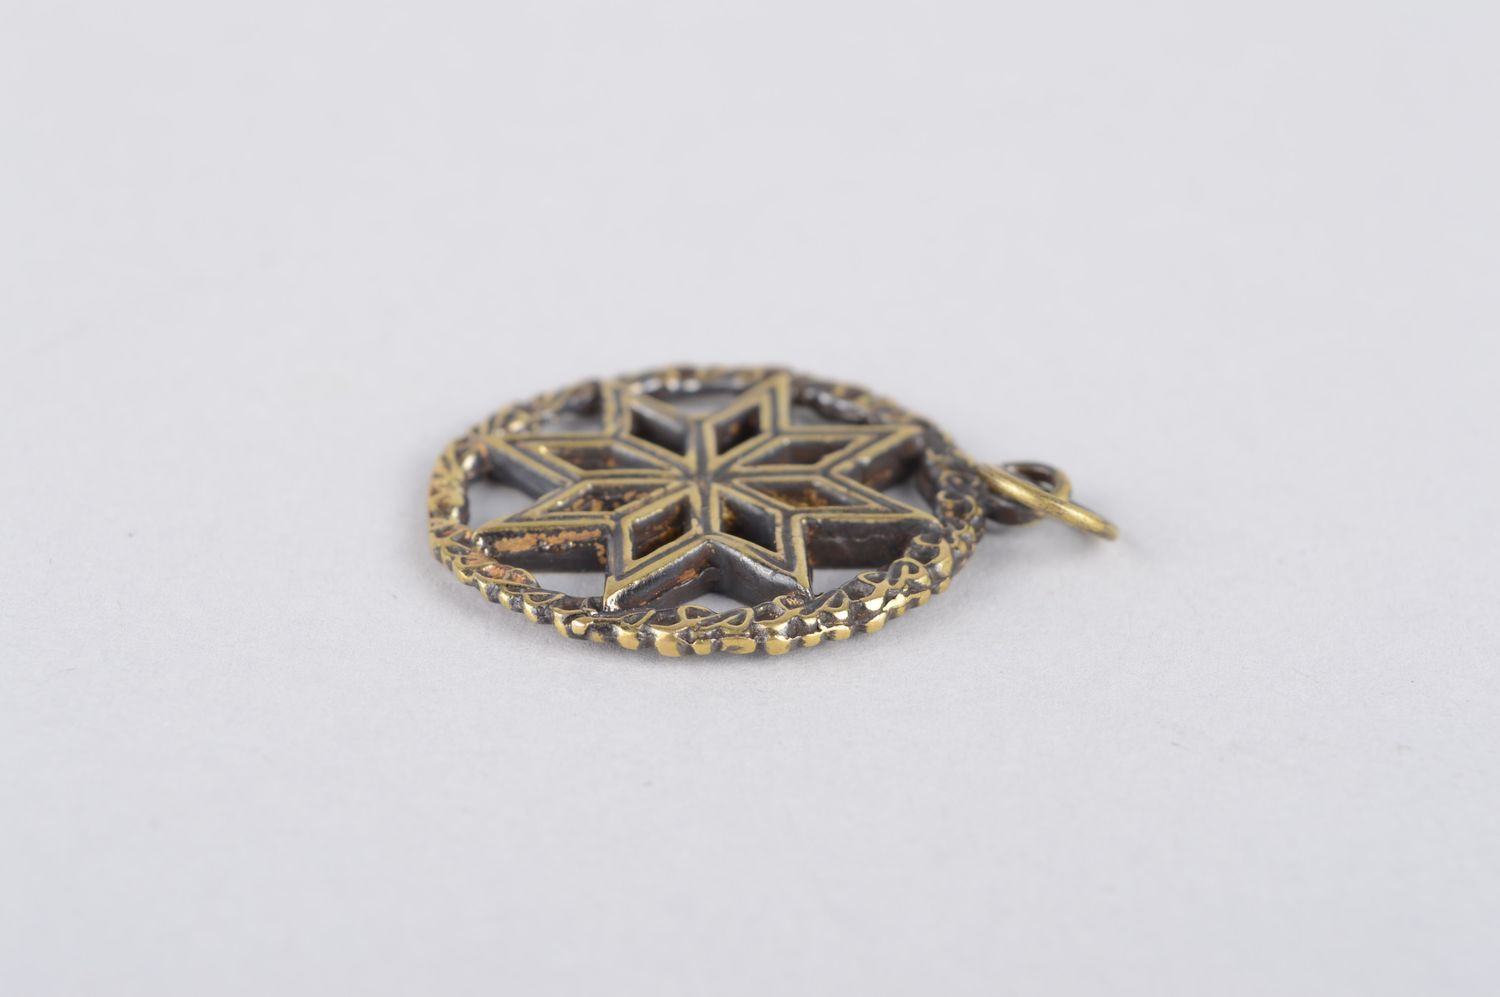 Bronze pendant handmade bronze jewelry metal pendant on cord elegant jewelry photo 4